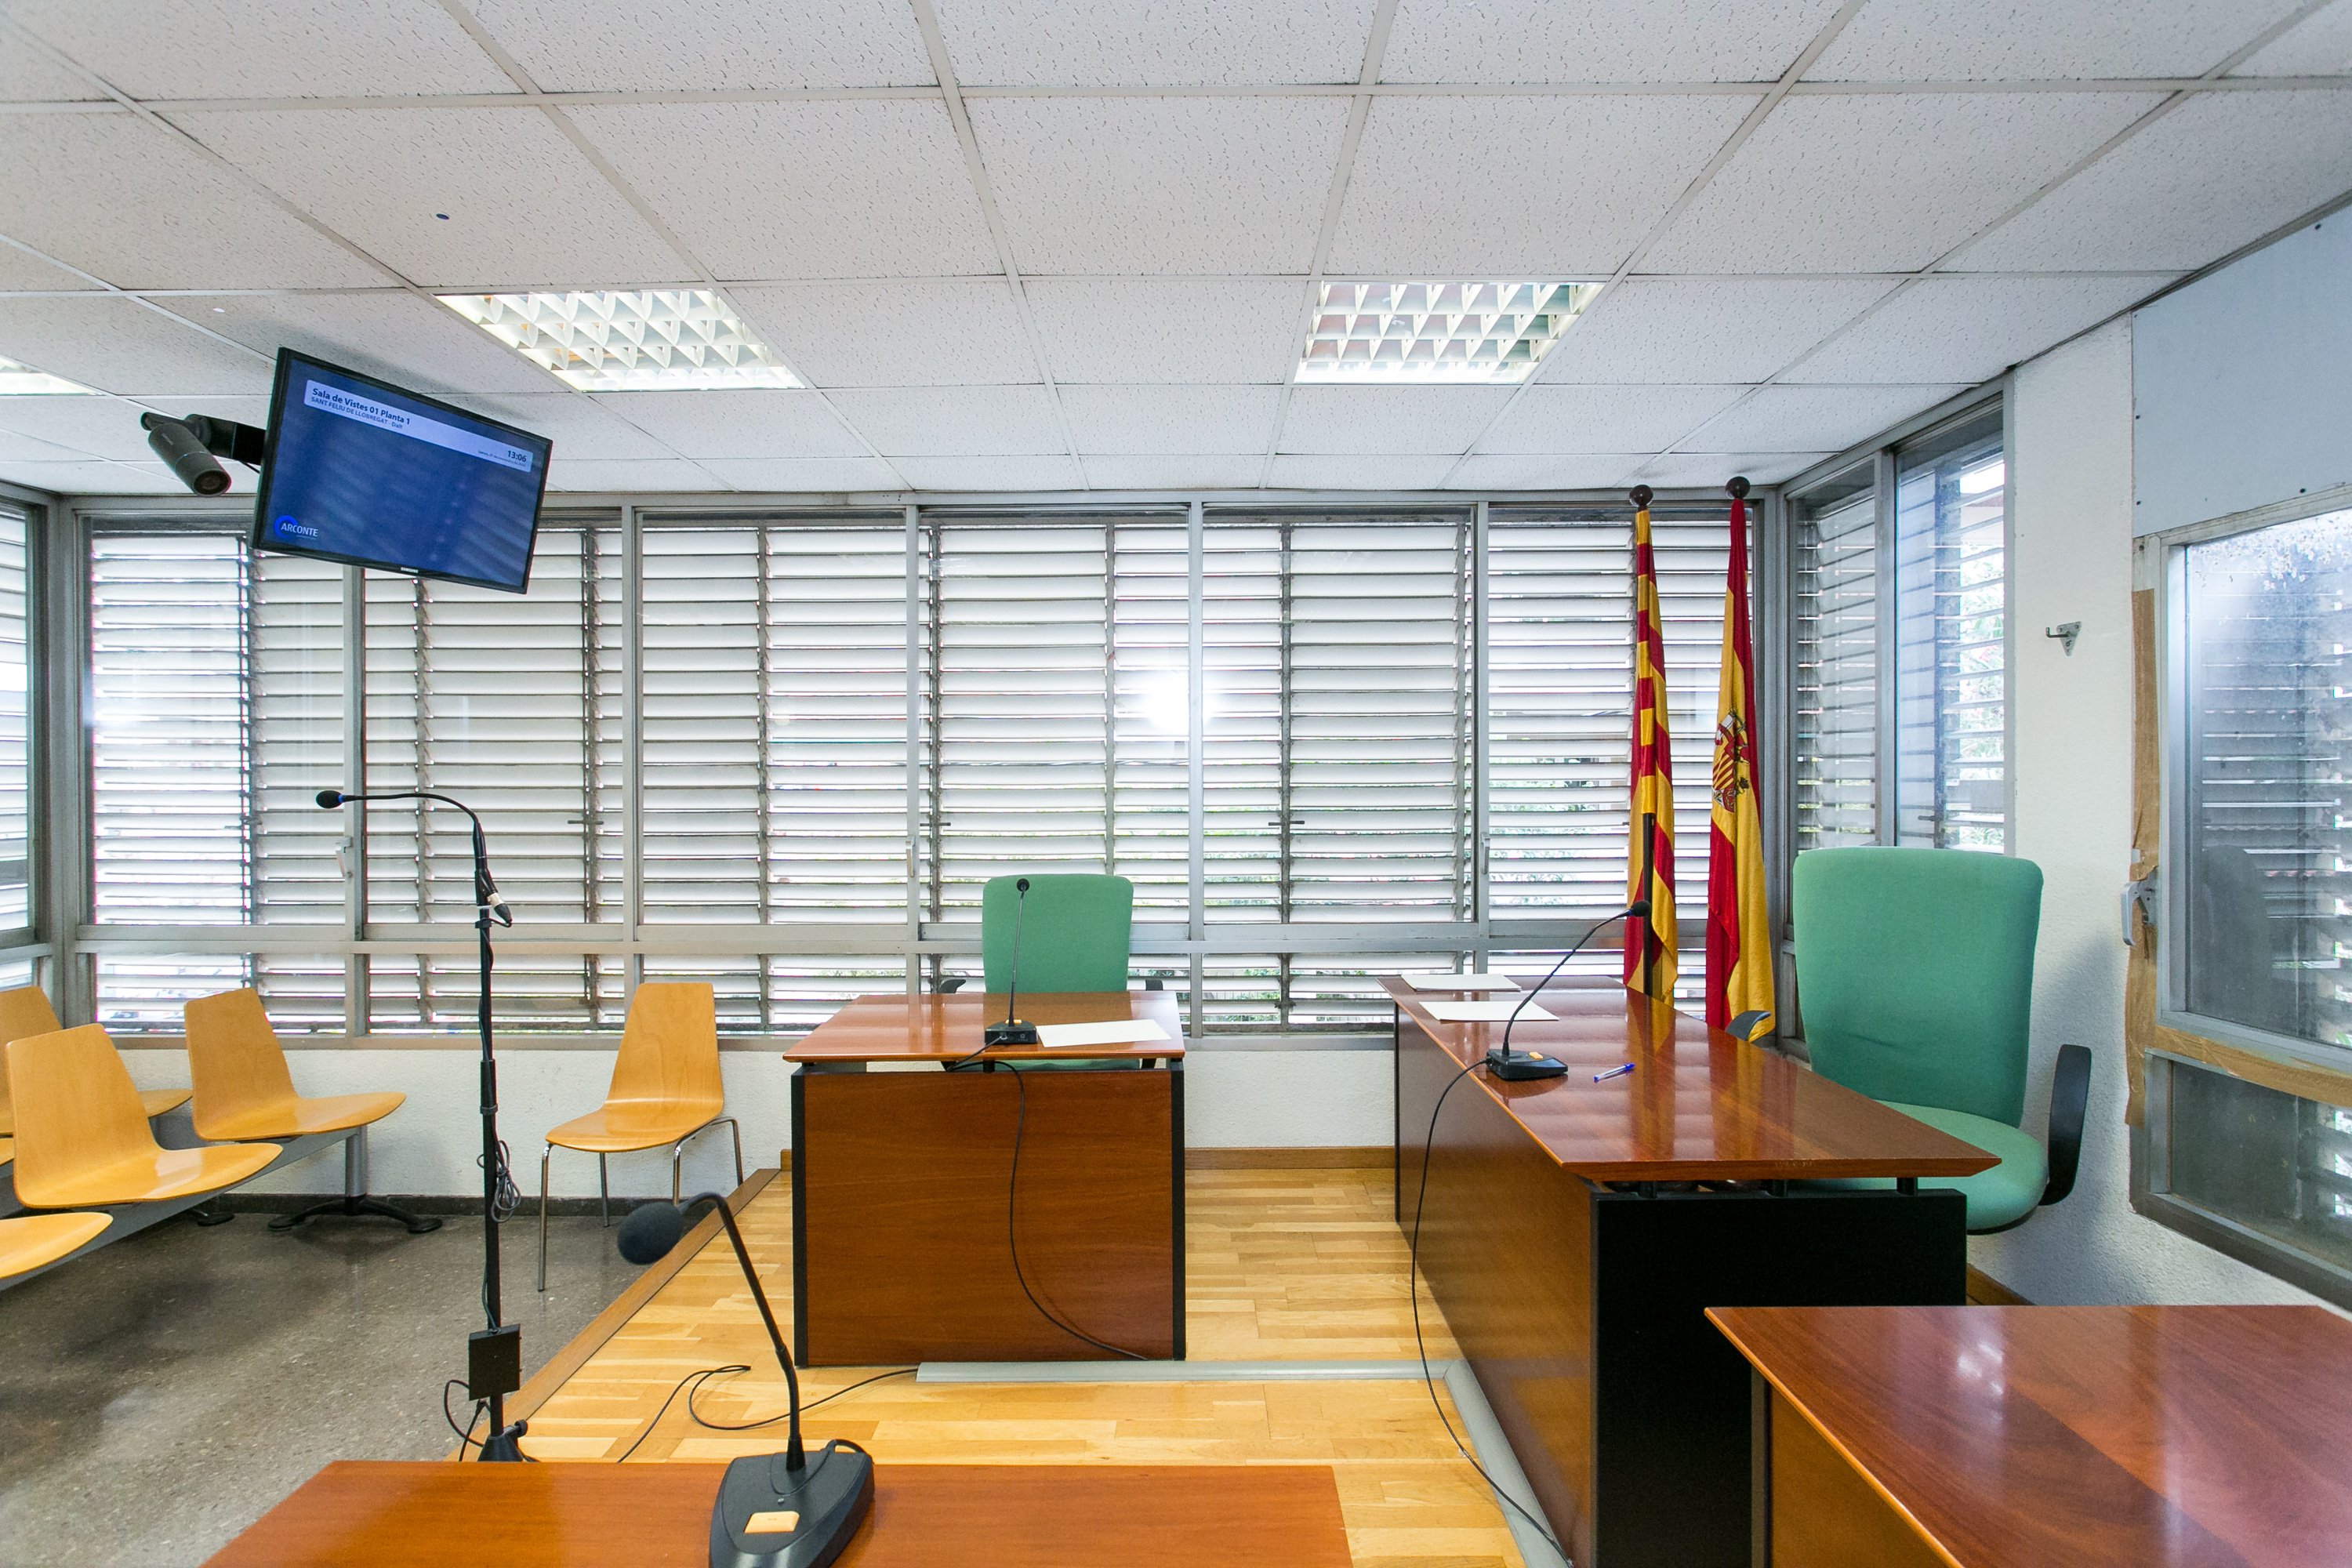 Totes les sales de vistes de Catalunya podran celebrar judicis telemàtics